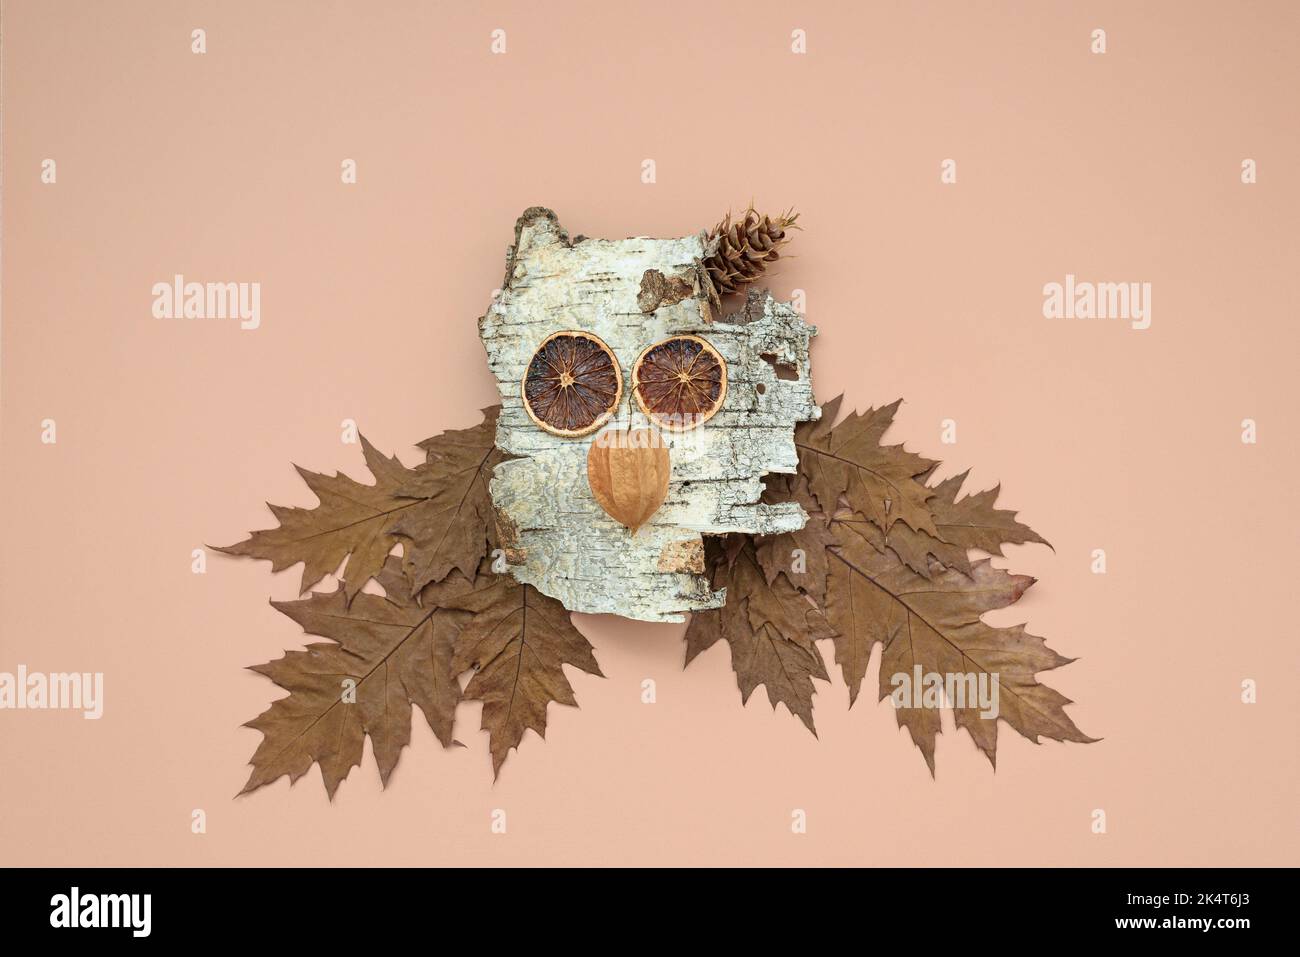 Composition d'automne avec écorce de bouleau faisant la tête de hibou Banque D'Images